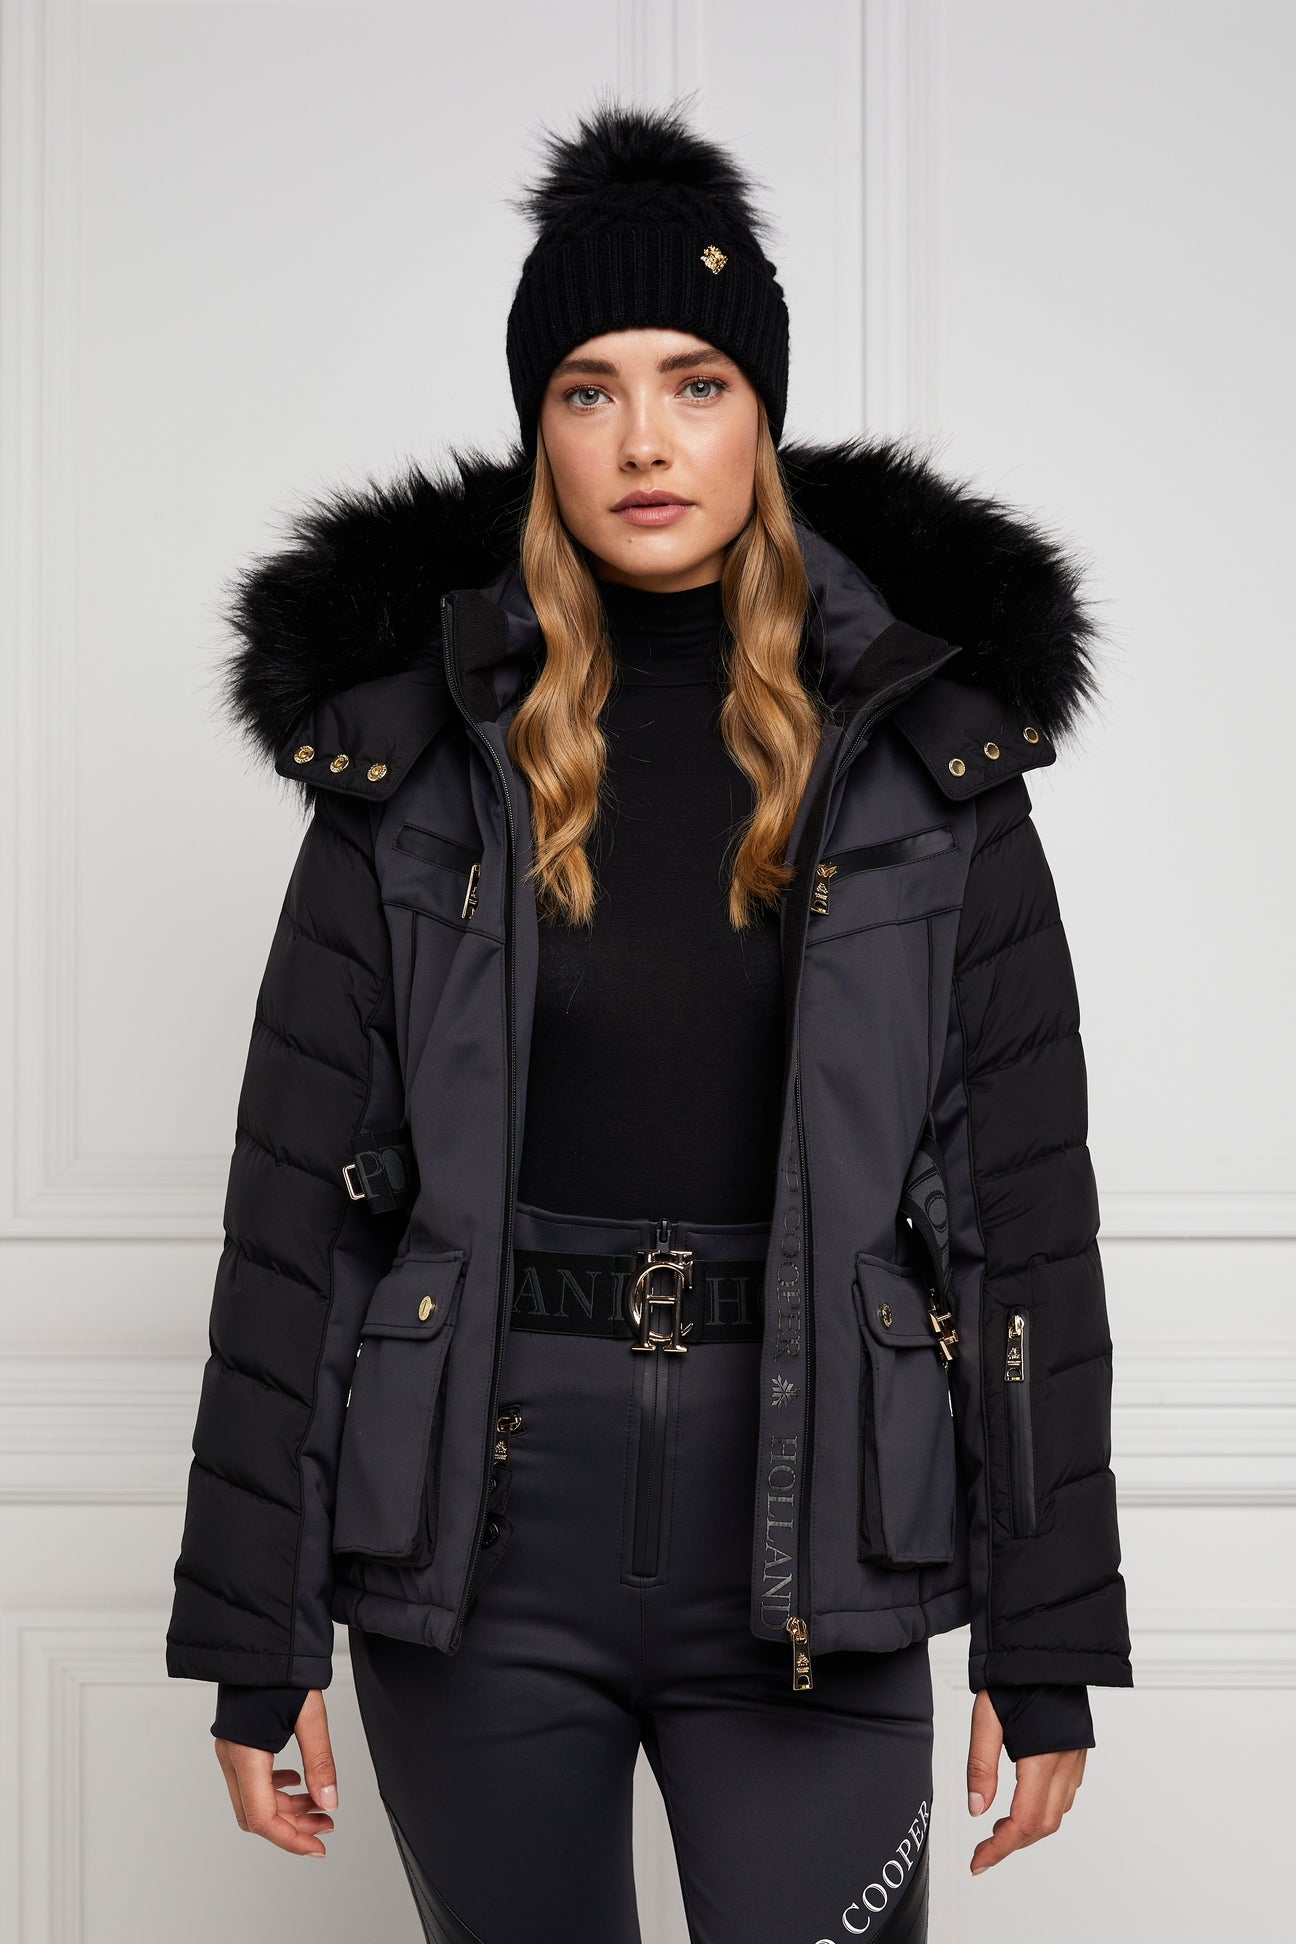 Ski Jacket (Black) – Holland Cooper